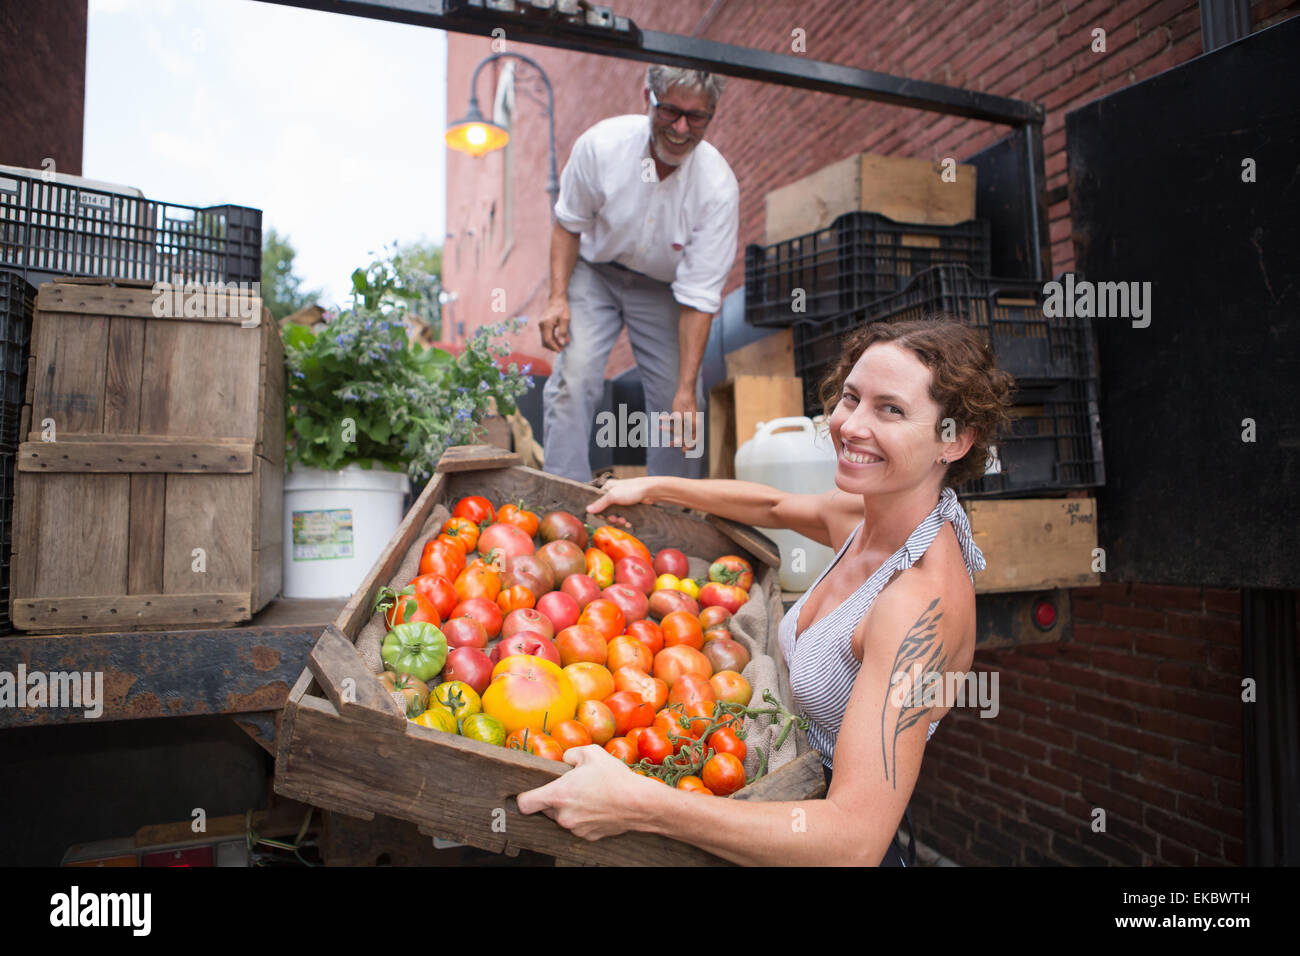 Les agriculteurs le déchargement des caisses de tomates biologiques outside grocery store Banque D'Images